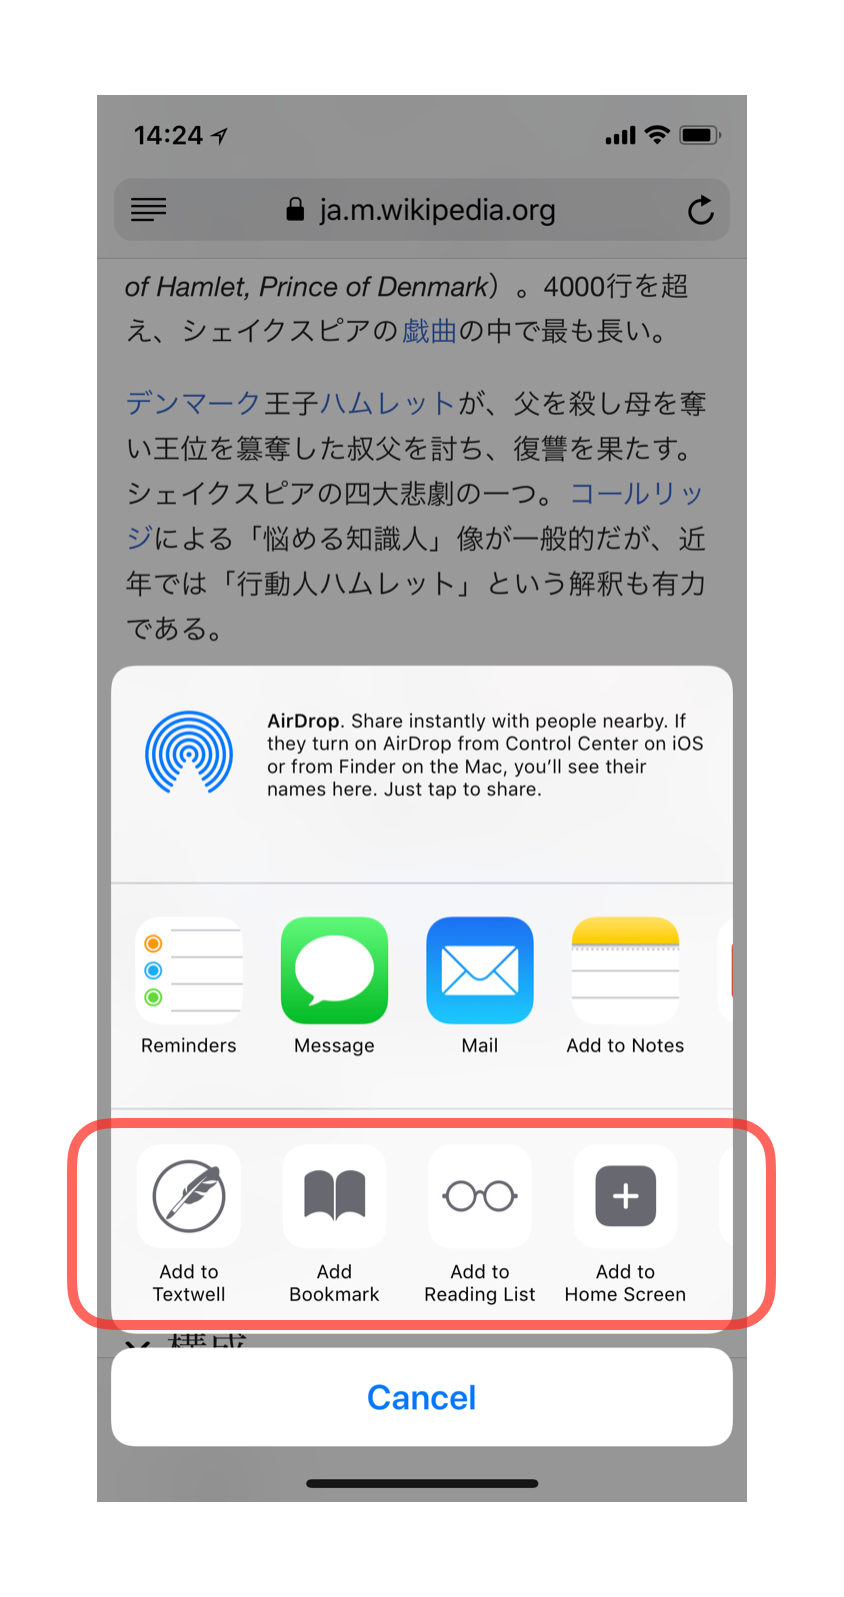 iPhone で Safari の共有メニューに、Textwell に追加、ブックマークに追加、リーディングリストに追加、ホーム画面に追加、のアイコンが並んでいる様子のキャプチャ